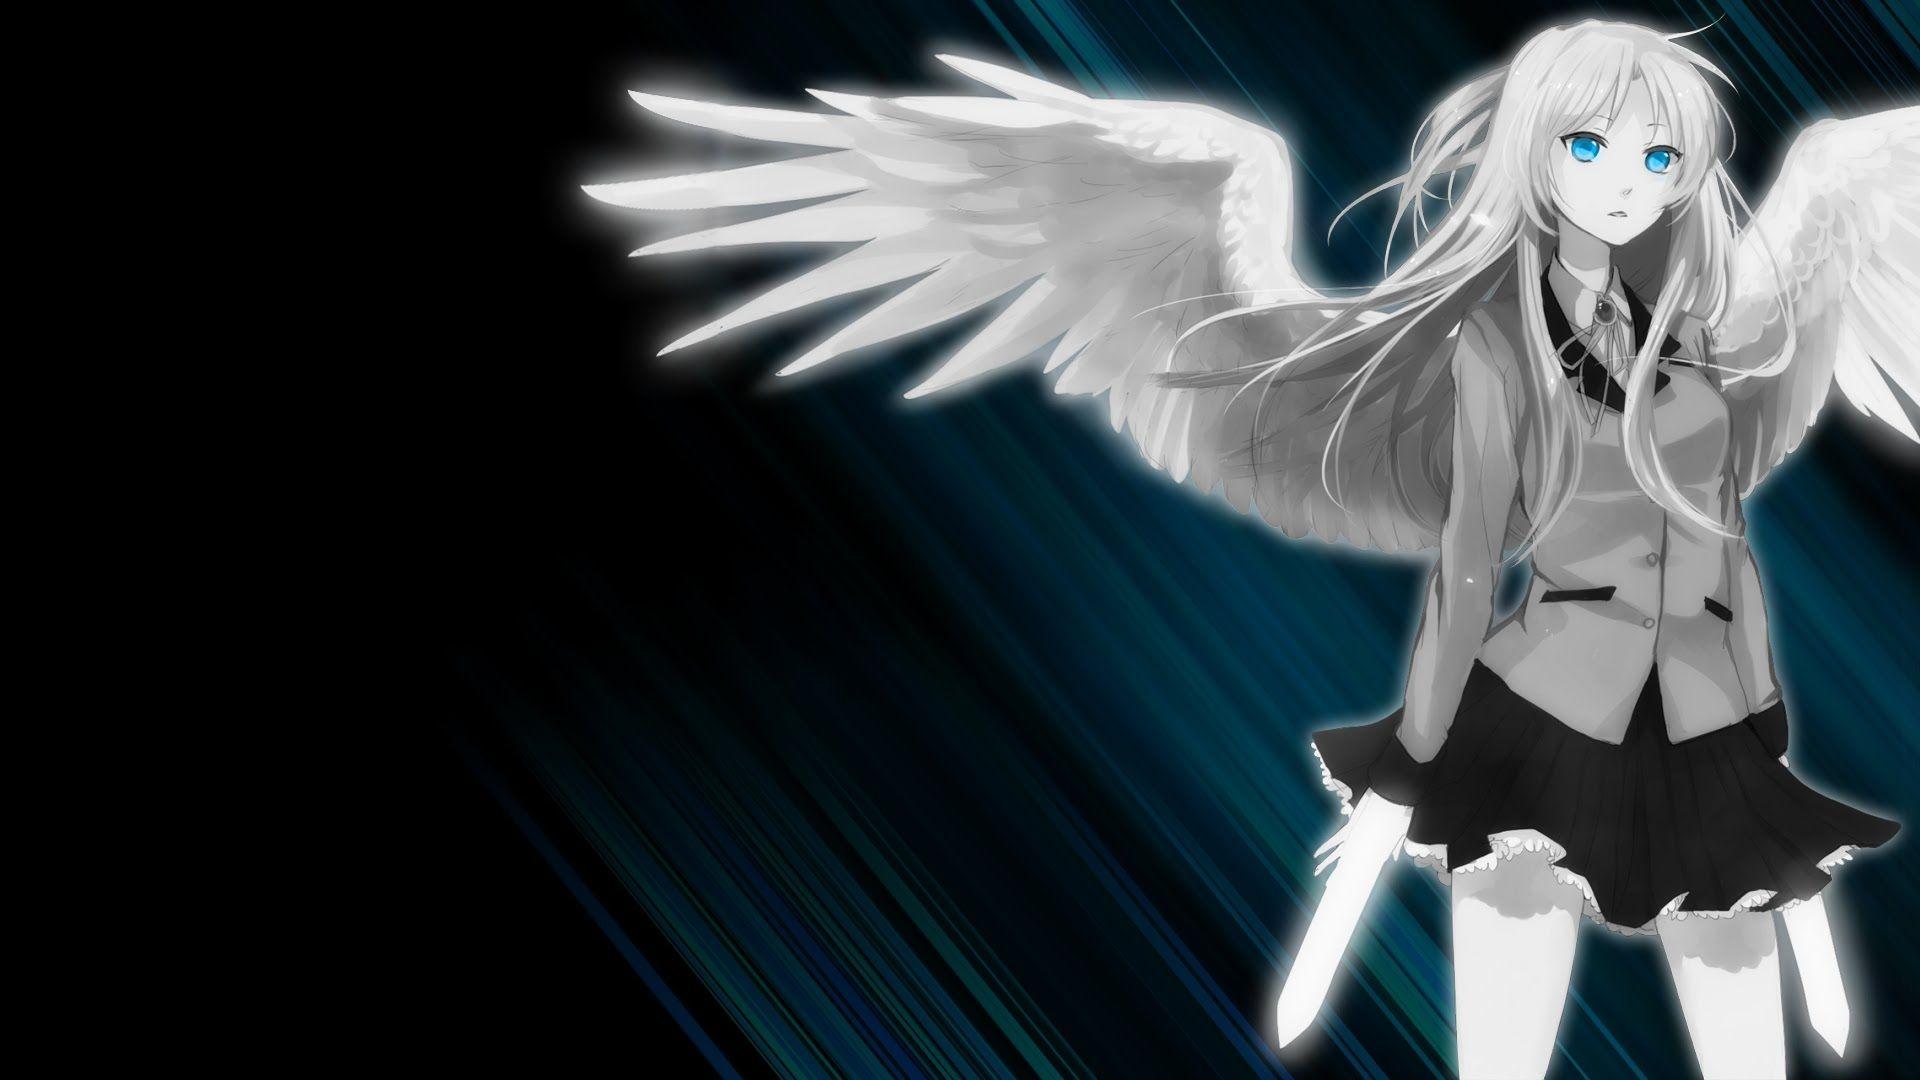 Fallen Angel Anime Girl Wallpaper Free Fallen Angel Anime